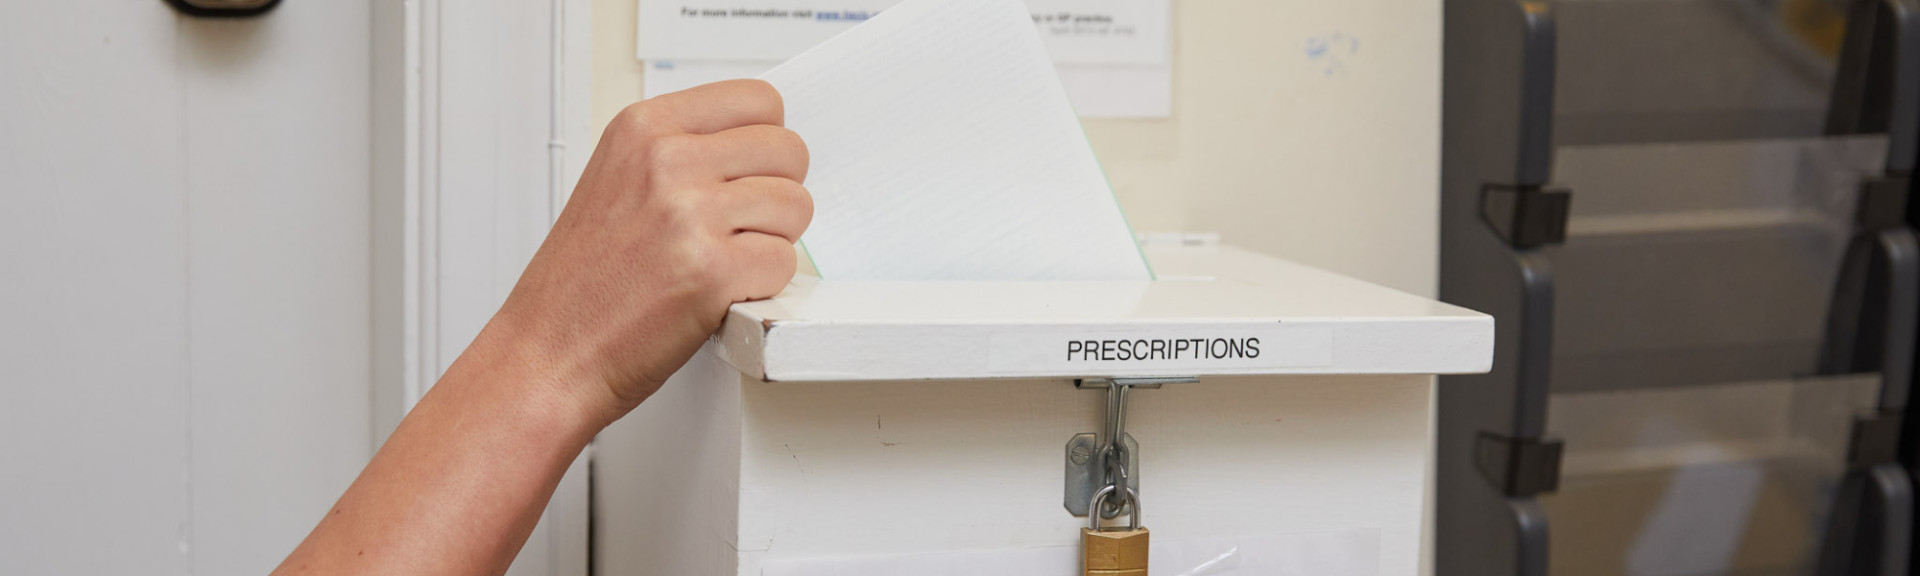 A photo showing a prescription box in reception